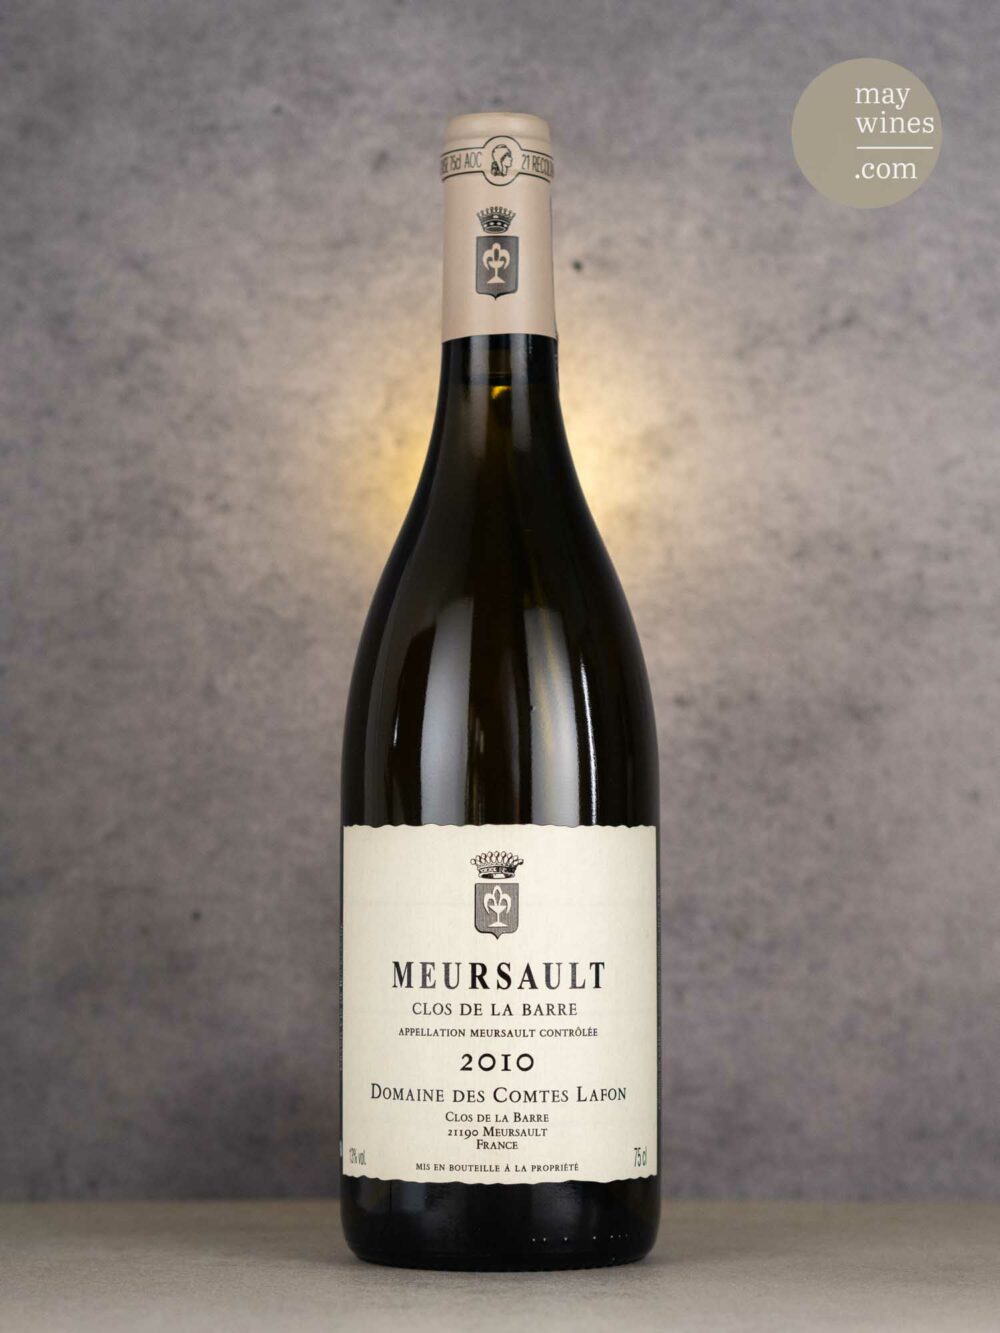 May Wines – Weißwein – 2010 Meursault Clos de la Barre AC - Domaine des Comtes Lafon